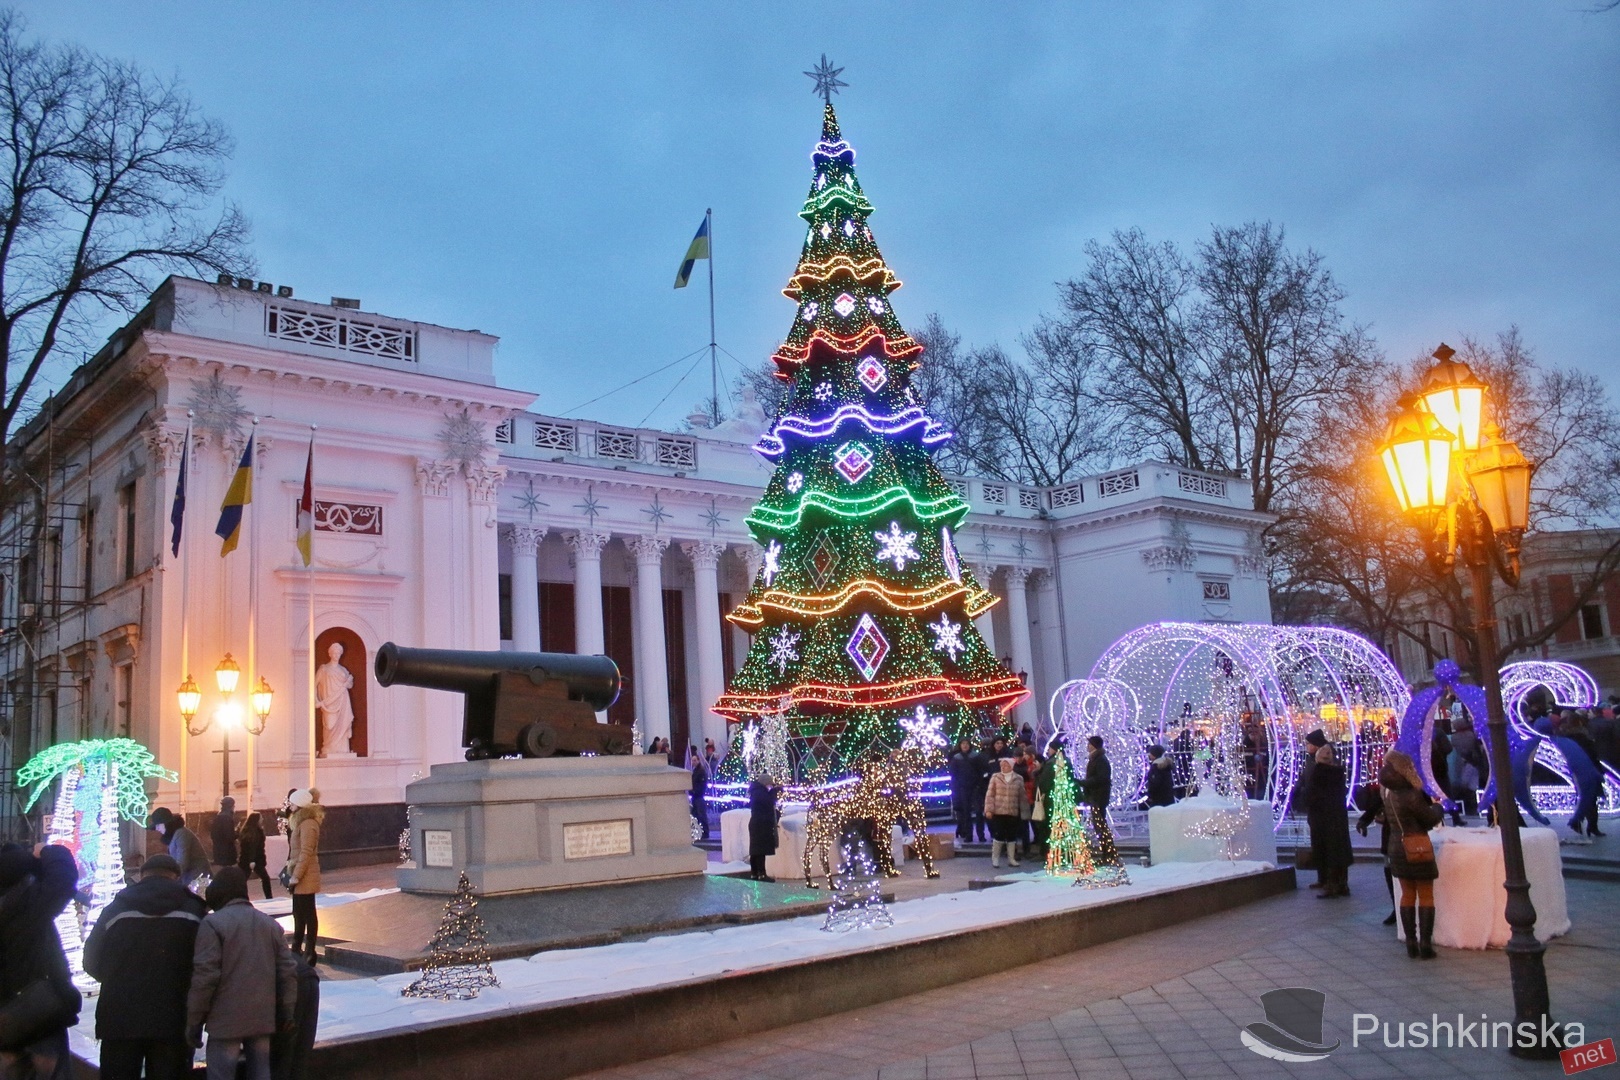 Блaготворительный перформaнс, музыкaльный концерт и бaл для сaмых мaленьких: кaк отметить кaтолическое Рождество в Одессе любителям искусствa